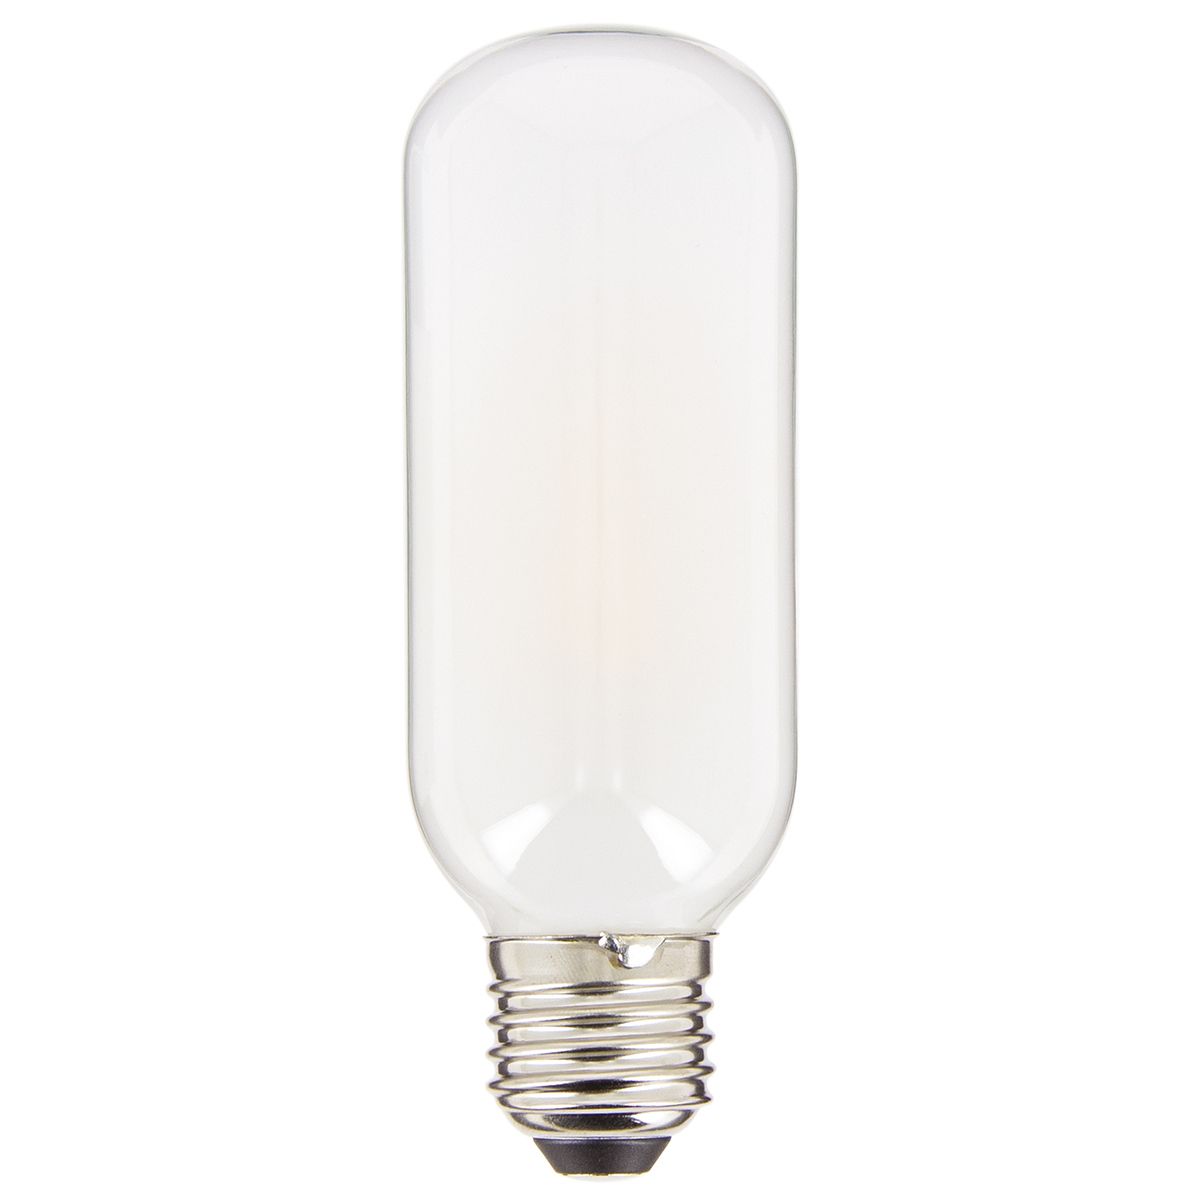 ANTELA Ampoule LED E27 5W 1055LM 2700K Lumière Blanche Chaud